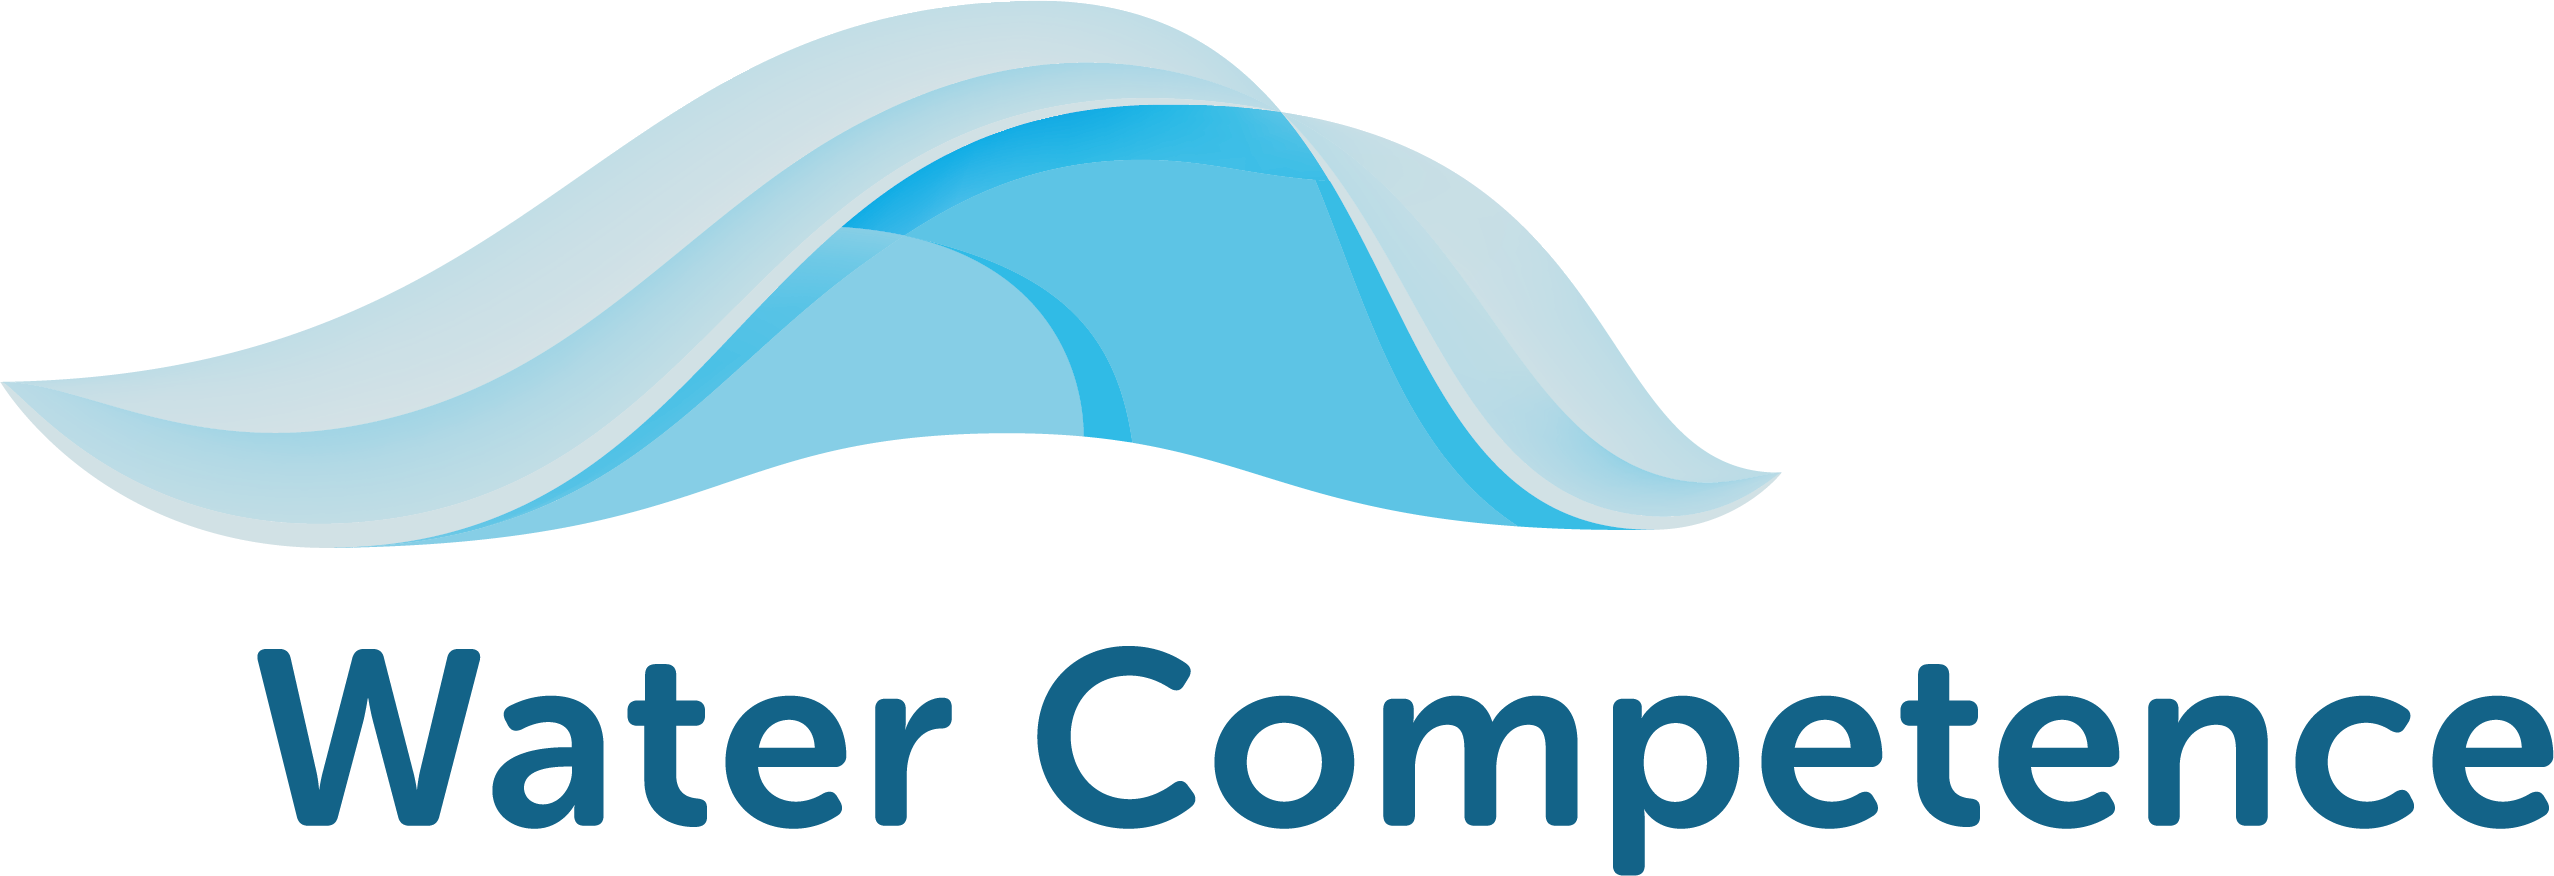 Water Competence - Instruksjonsvideoer for svømming